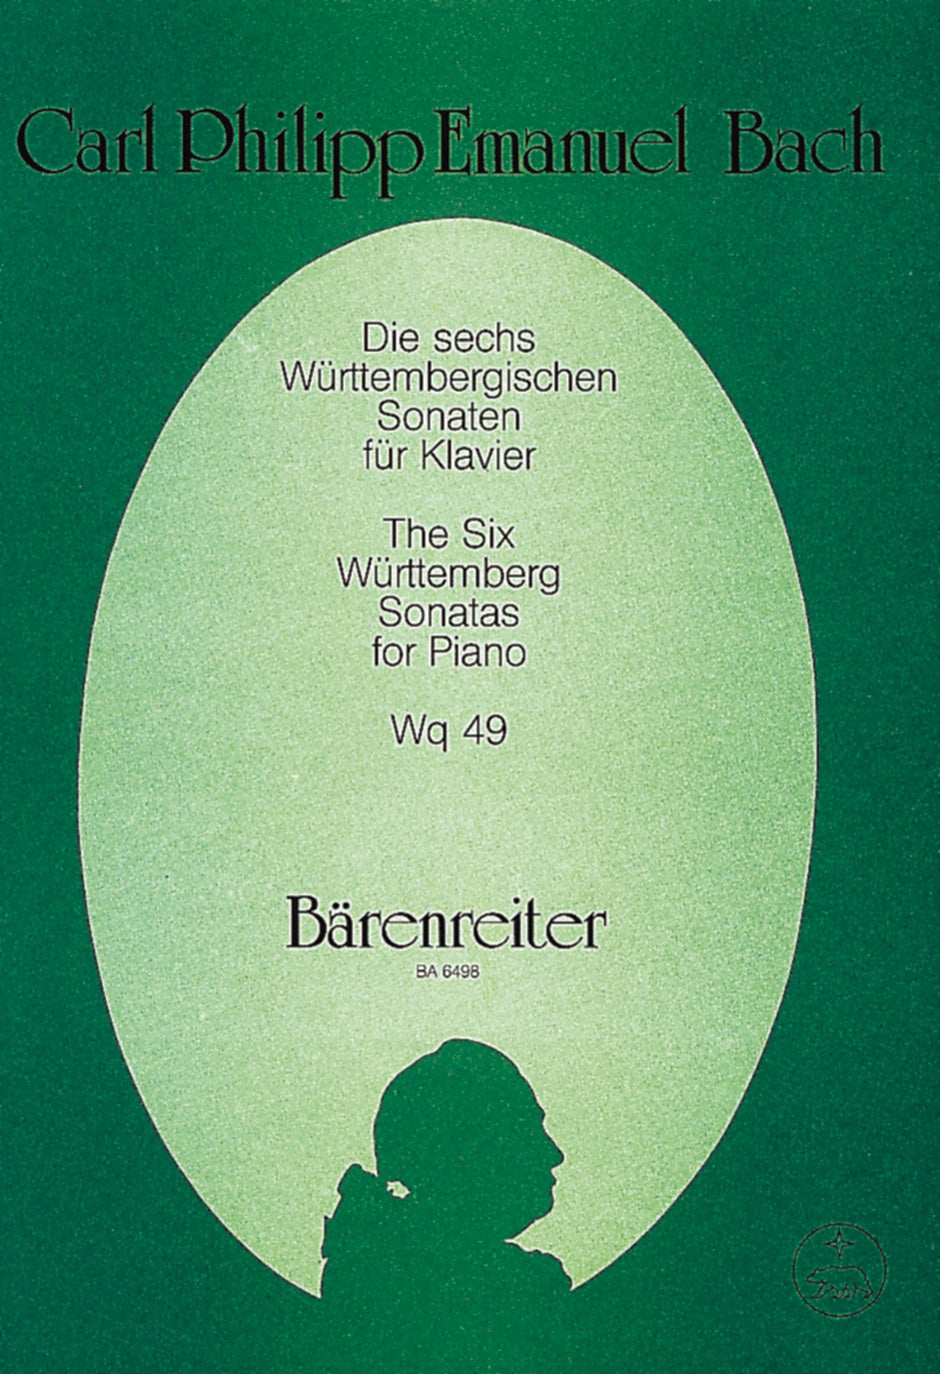 The 6 Wurttemberg Sonatas Wq49 - 6つのヴュルテンベルク・ソナタ - C.P.E.バッハ — 楽譜専門店  Crescendo alle